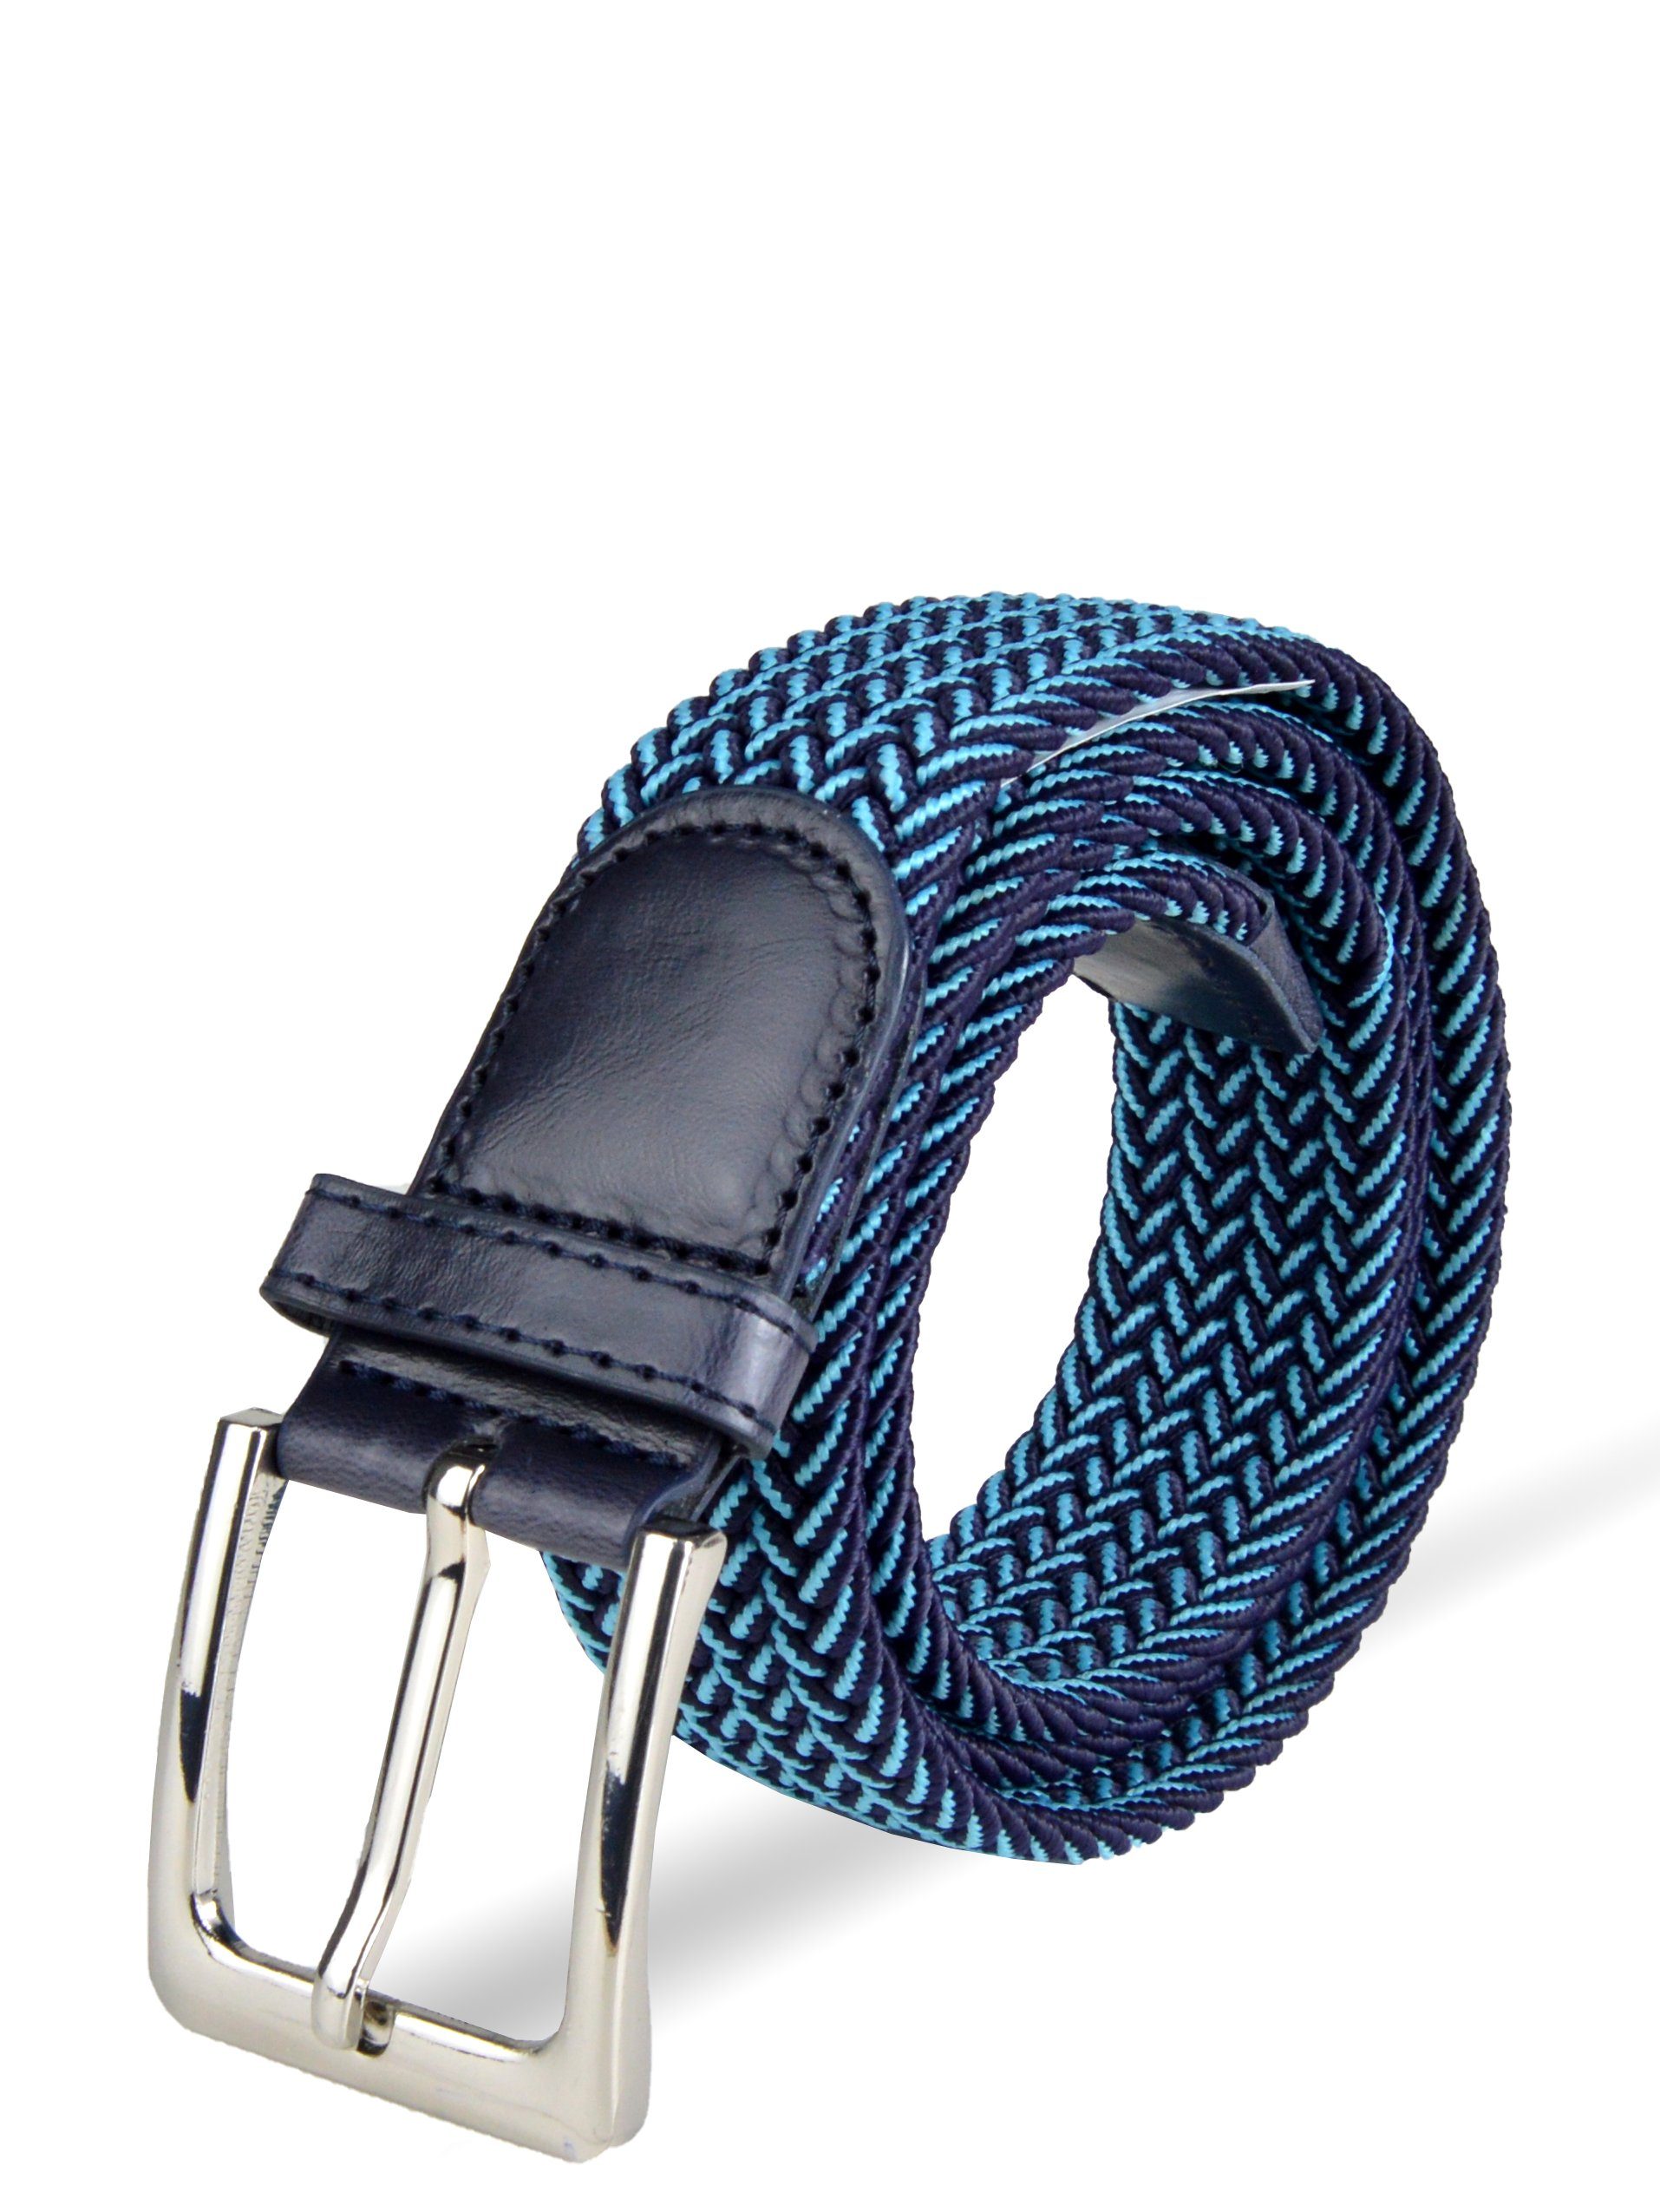 (105-150cm) elastischer Socked einstellbar, Stoffgürtel stufenlos Blau-Hellblau Herren Flechtgürtel Stretchgürtel